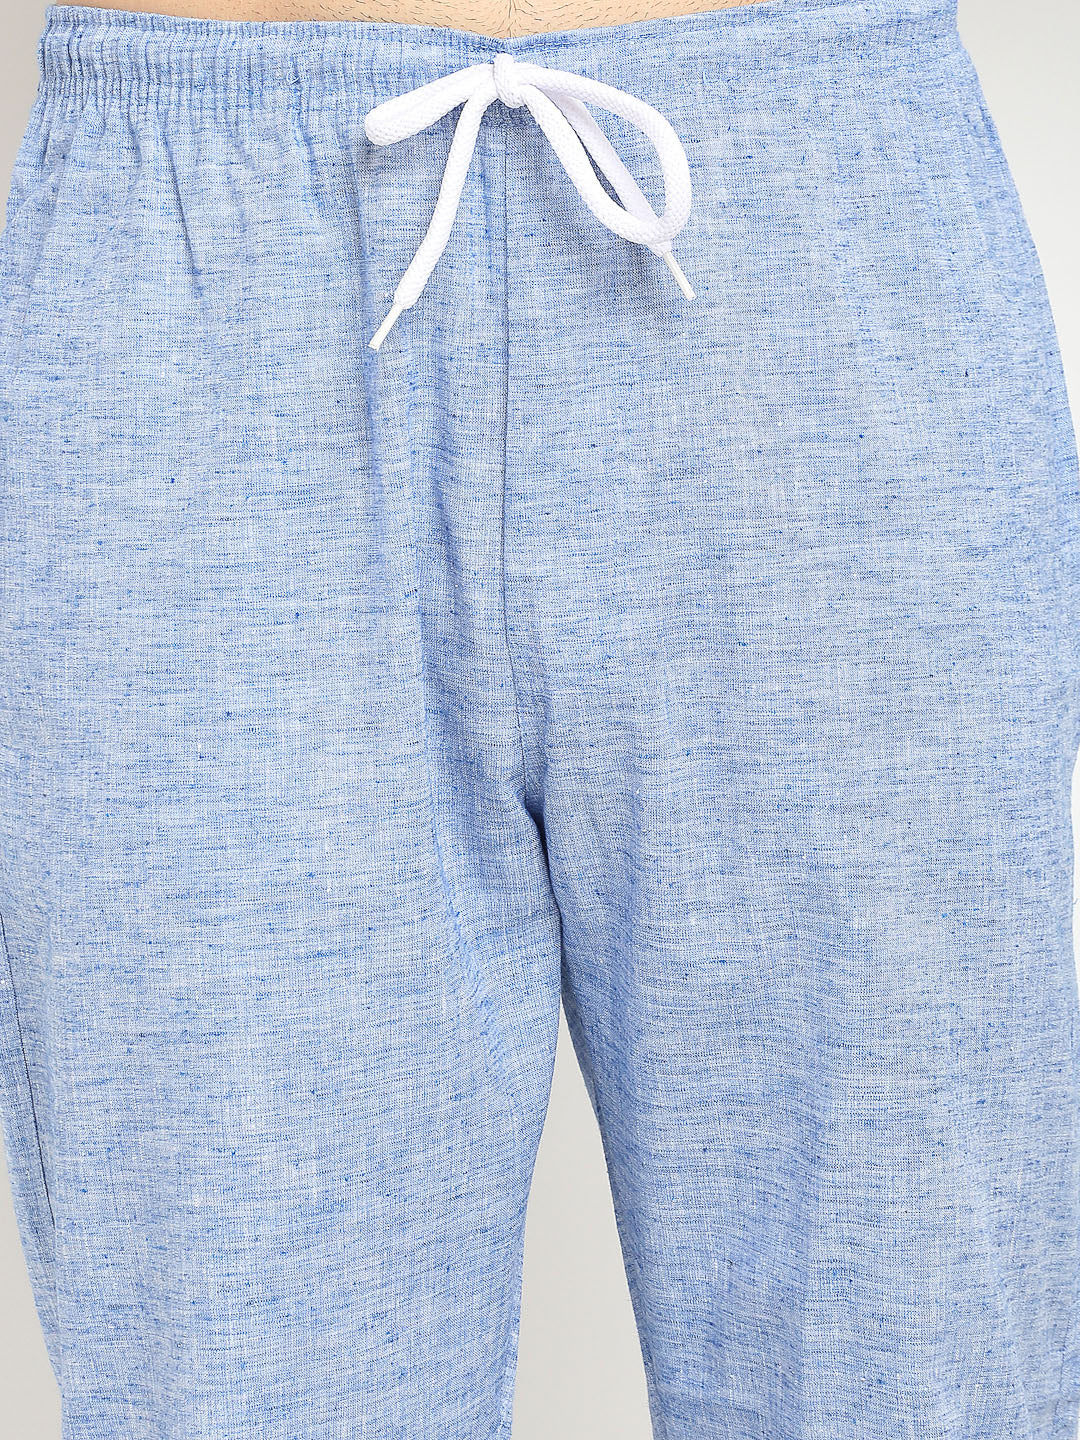 Jainish Men's Blue Linen Cotton Track Pants ( JOG 021Blue )